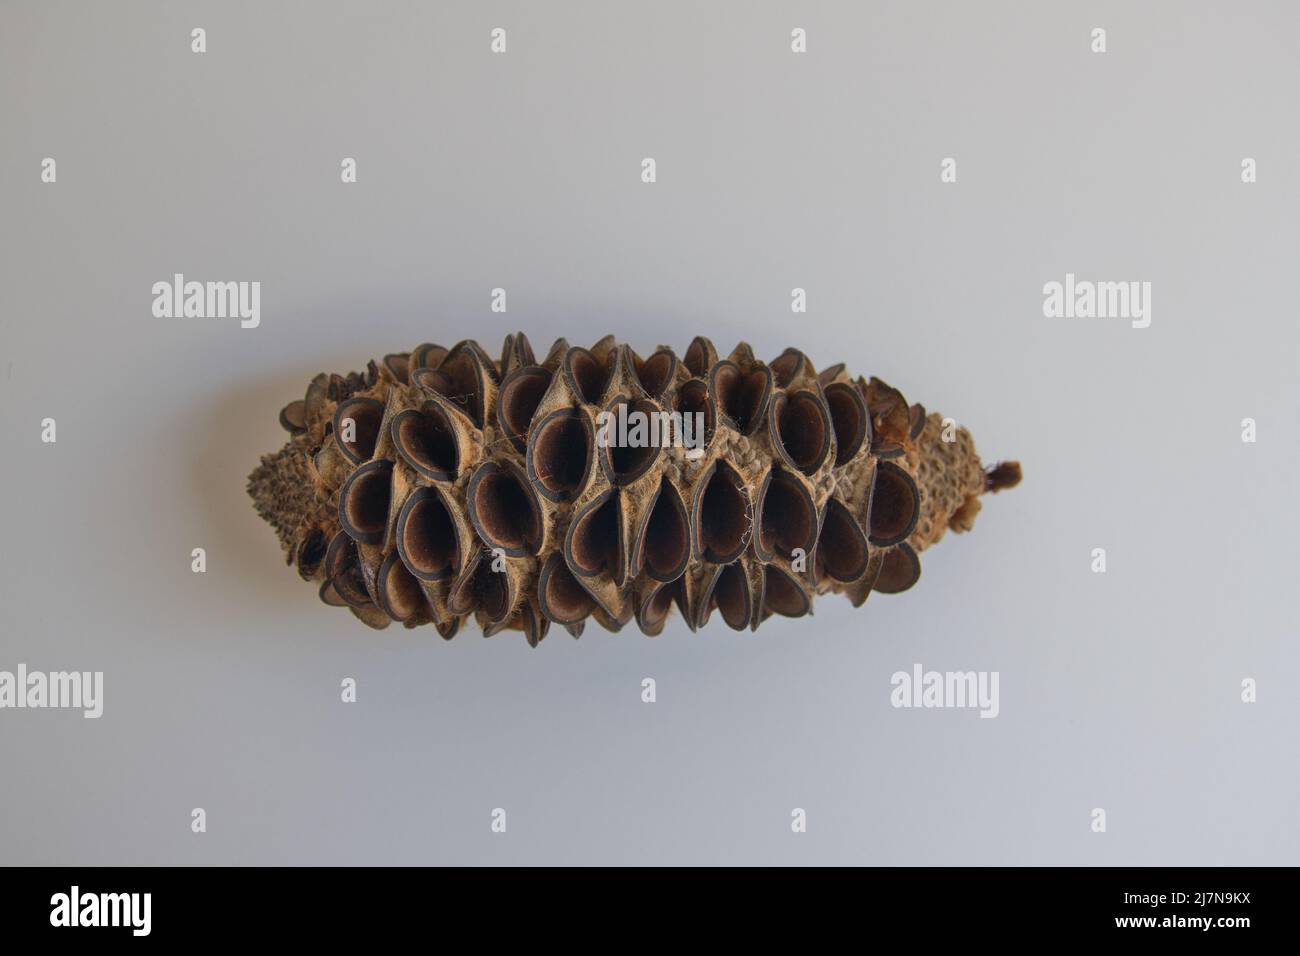 Gousse de graines séchées d'une banksia australienne isolée sur fond gris Banque D'Images